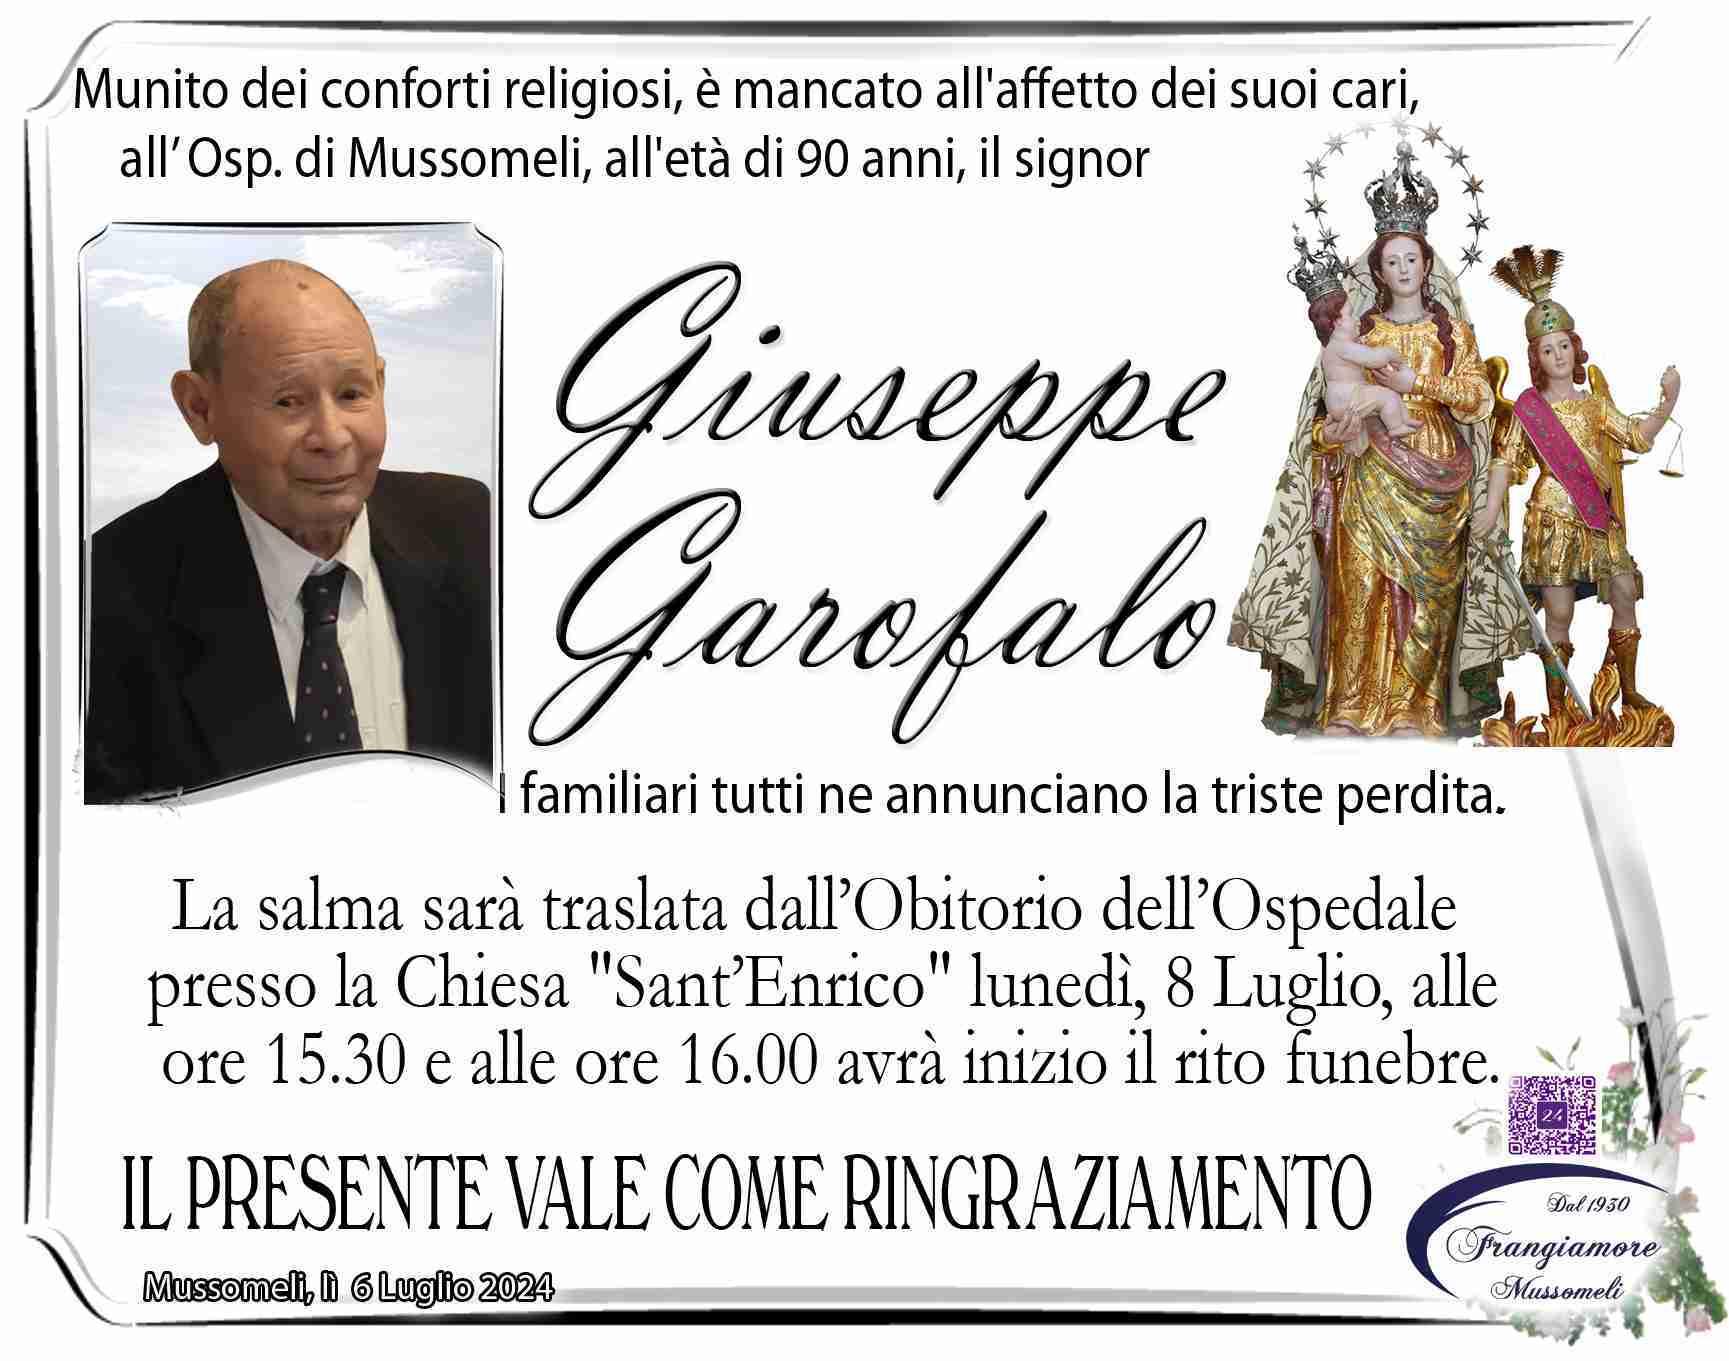 Giuseppe Garofalo